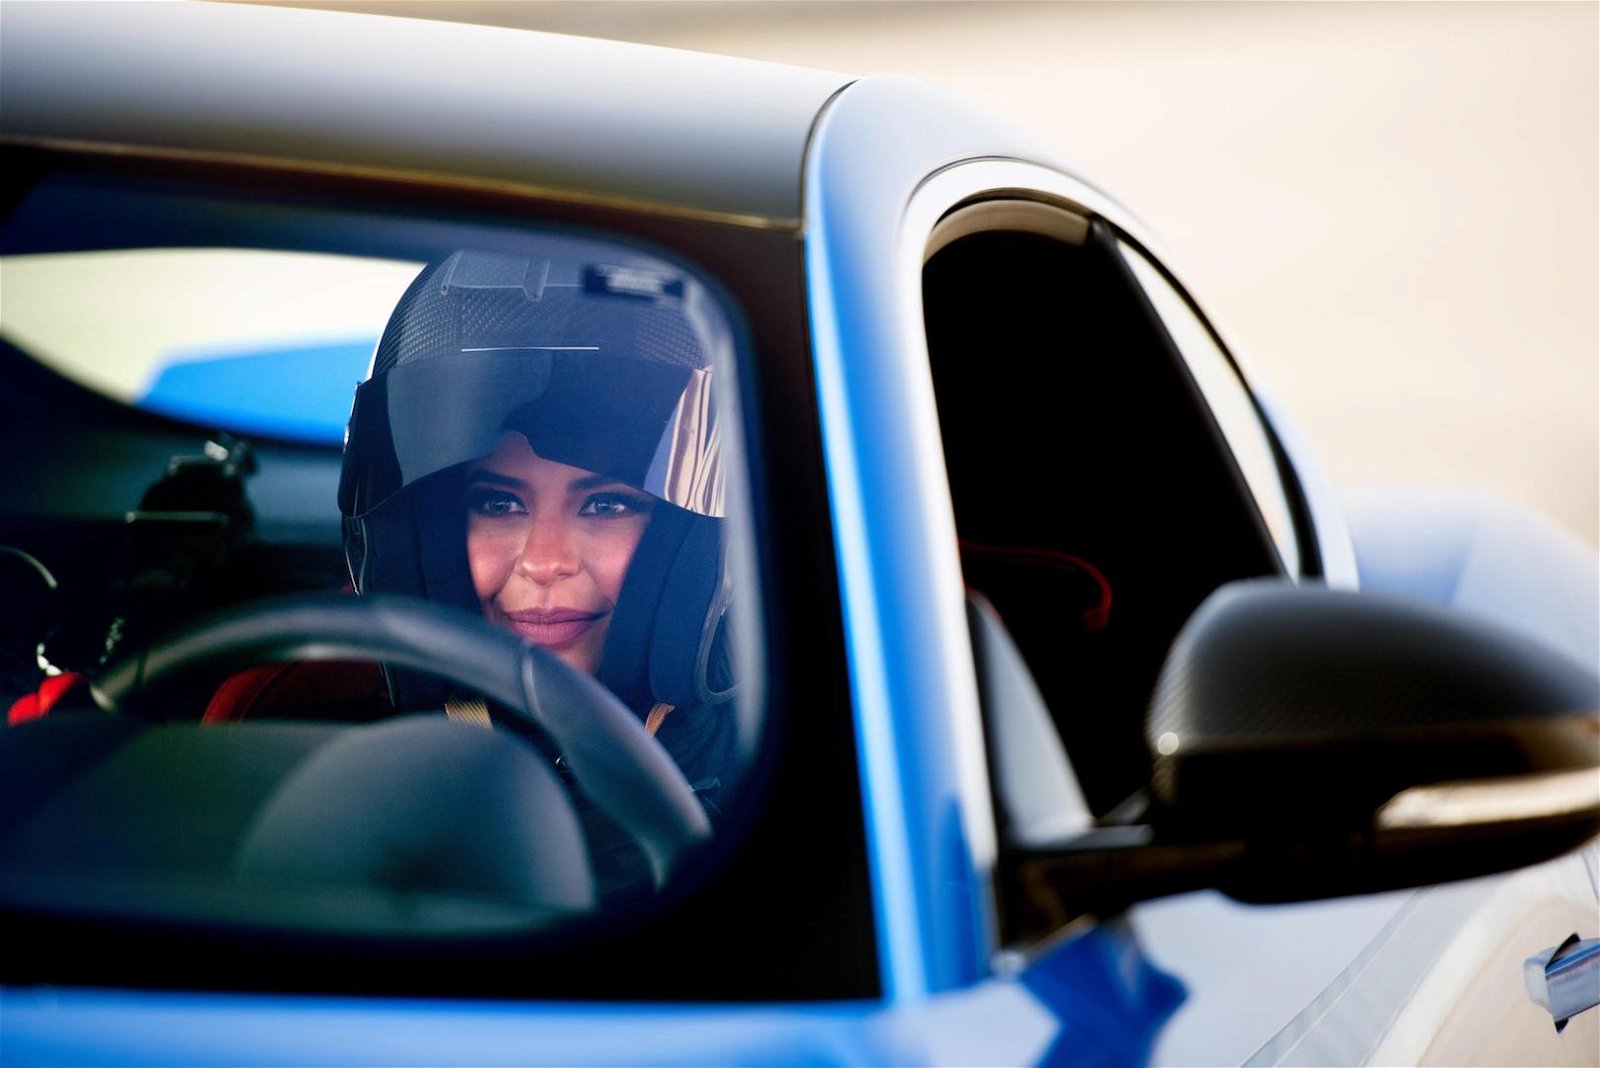 jaguar f-type saudi arabia women driving ban 2